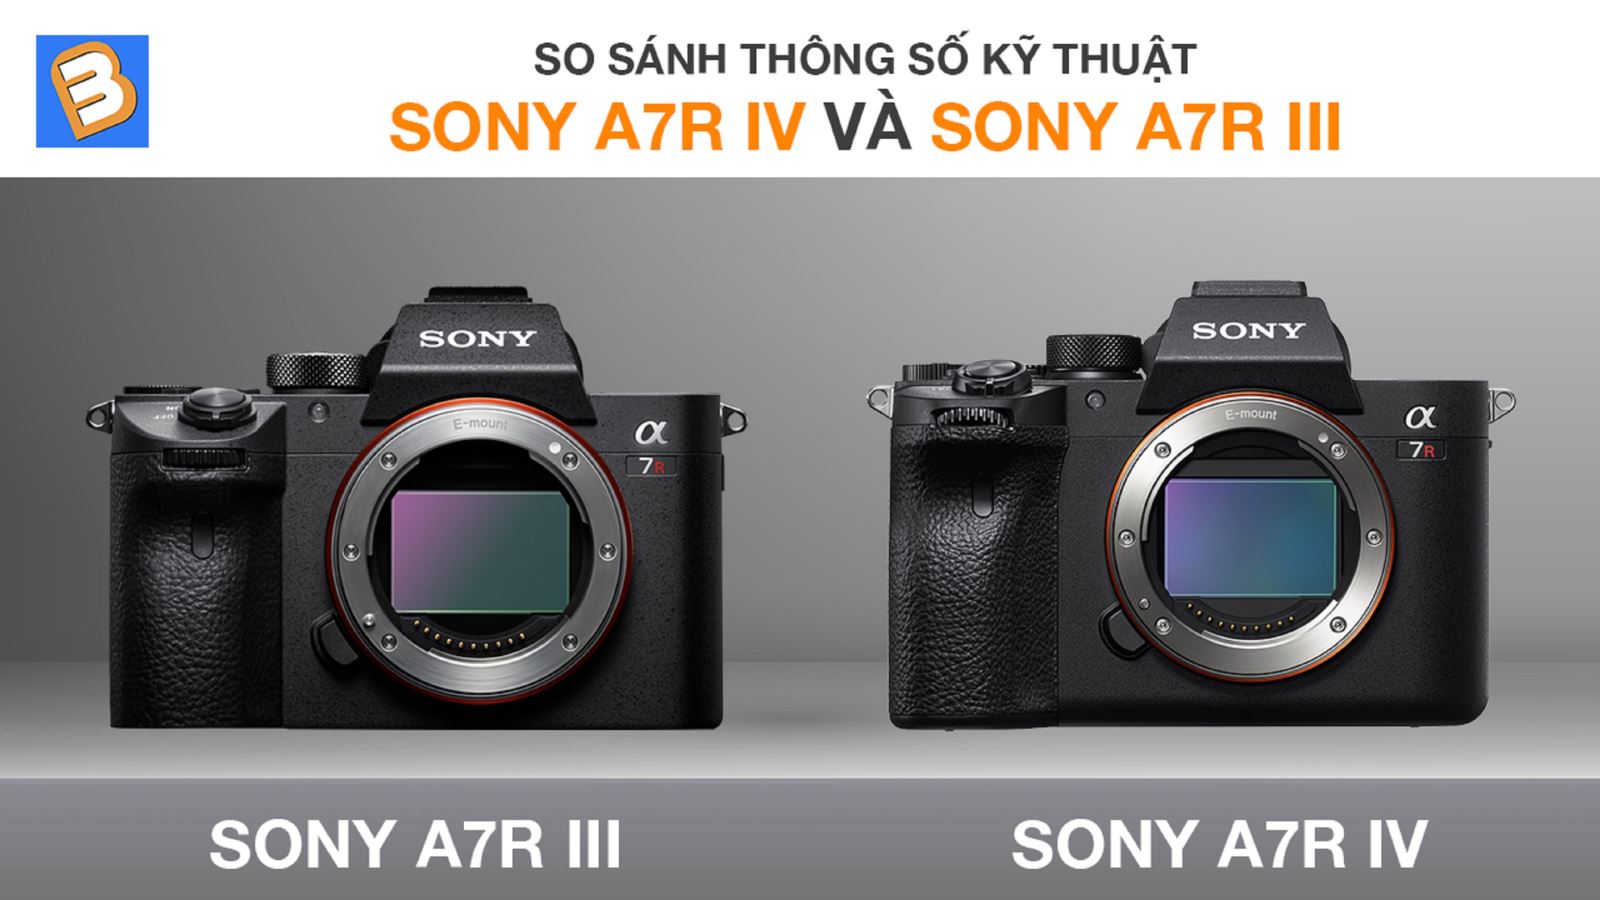 So sánh thông số kỹ thuật Sony A7R IV và Sony A7R III